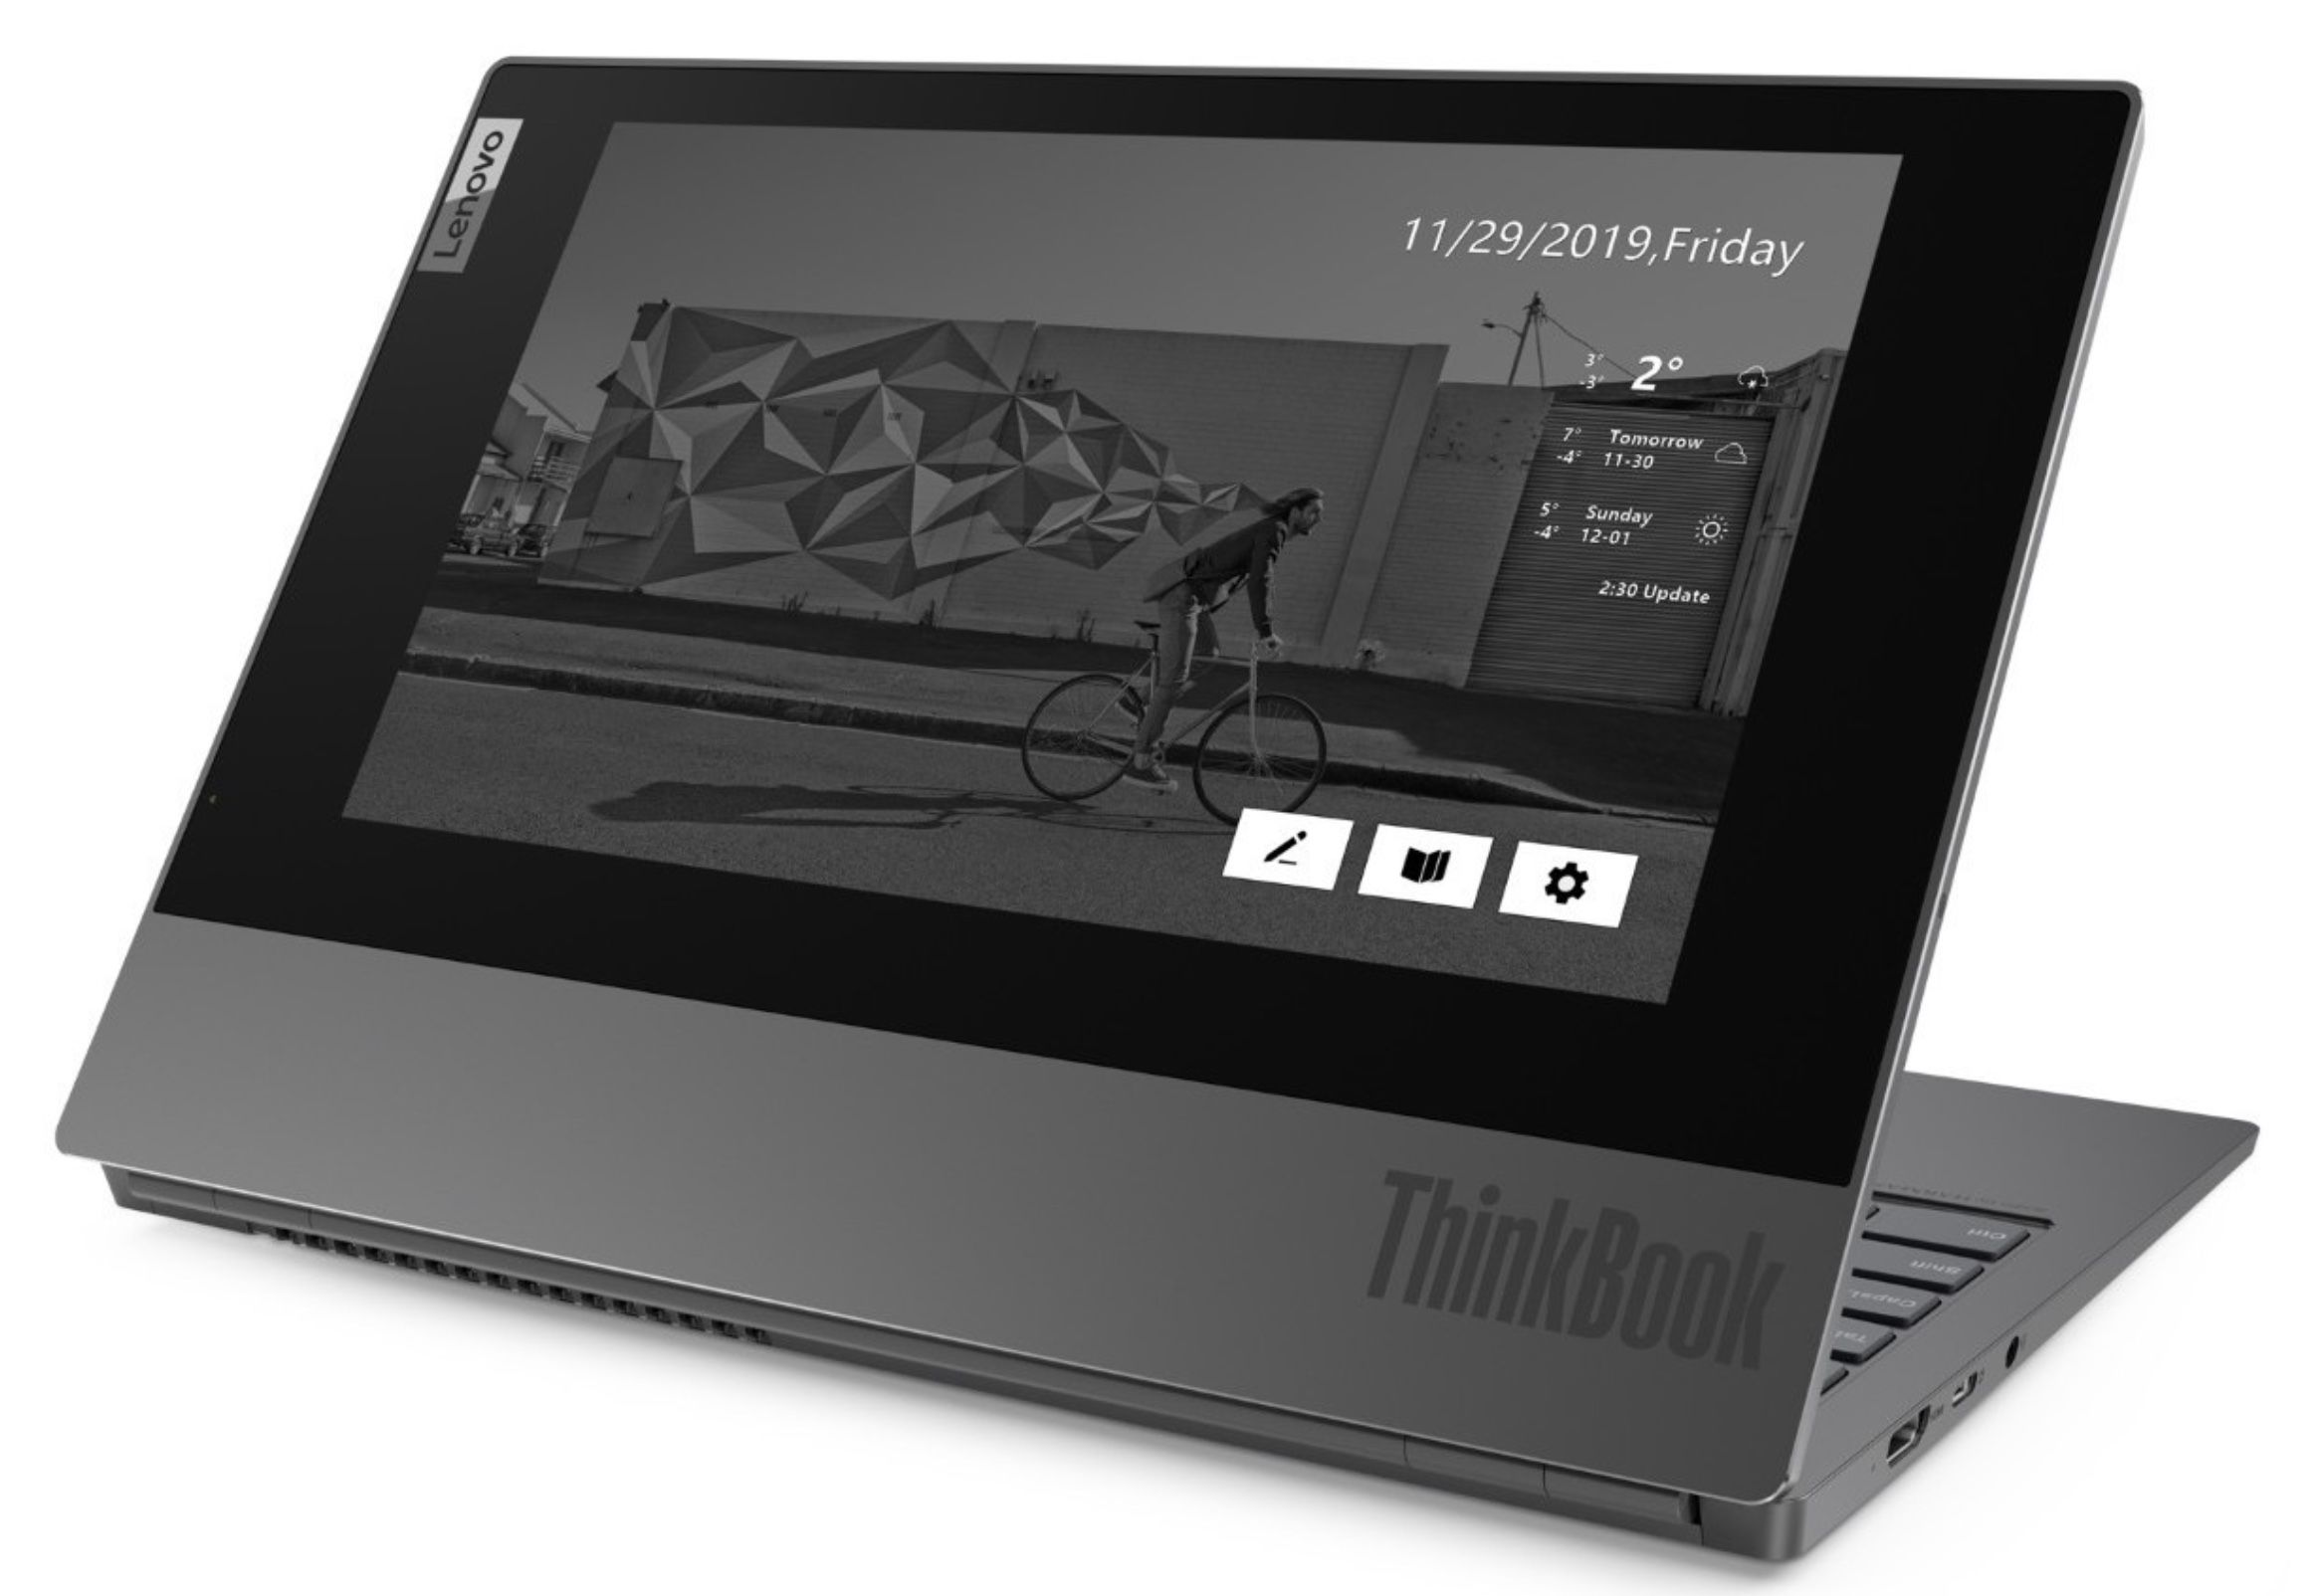 Lenovo ThinkBook Plus   13,3 Zoll Full HD Notebook mit zweitem E Ink Display für 599€ (statt 775€)